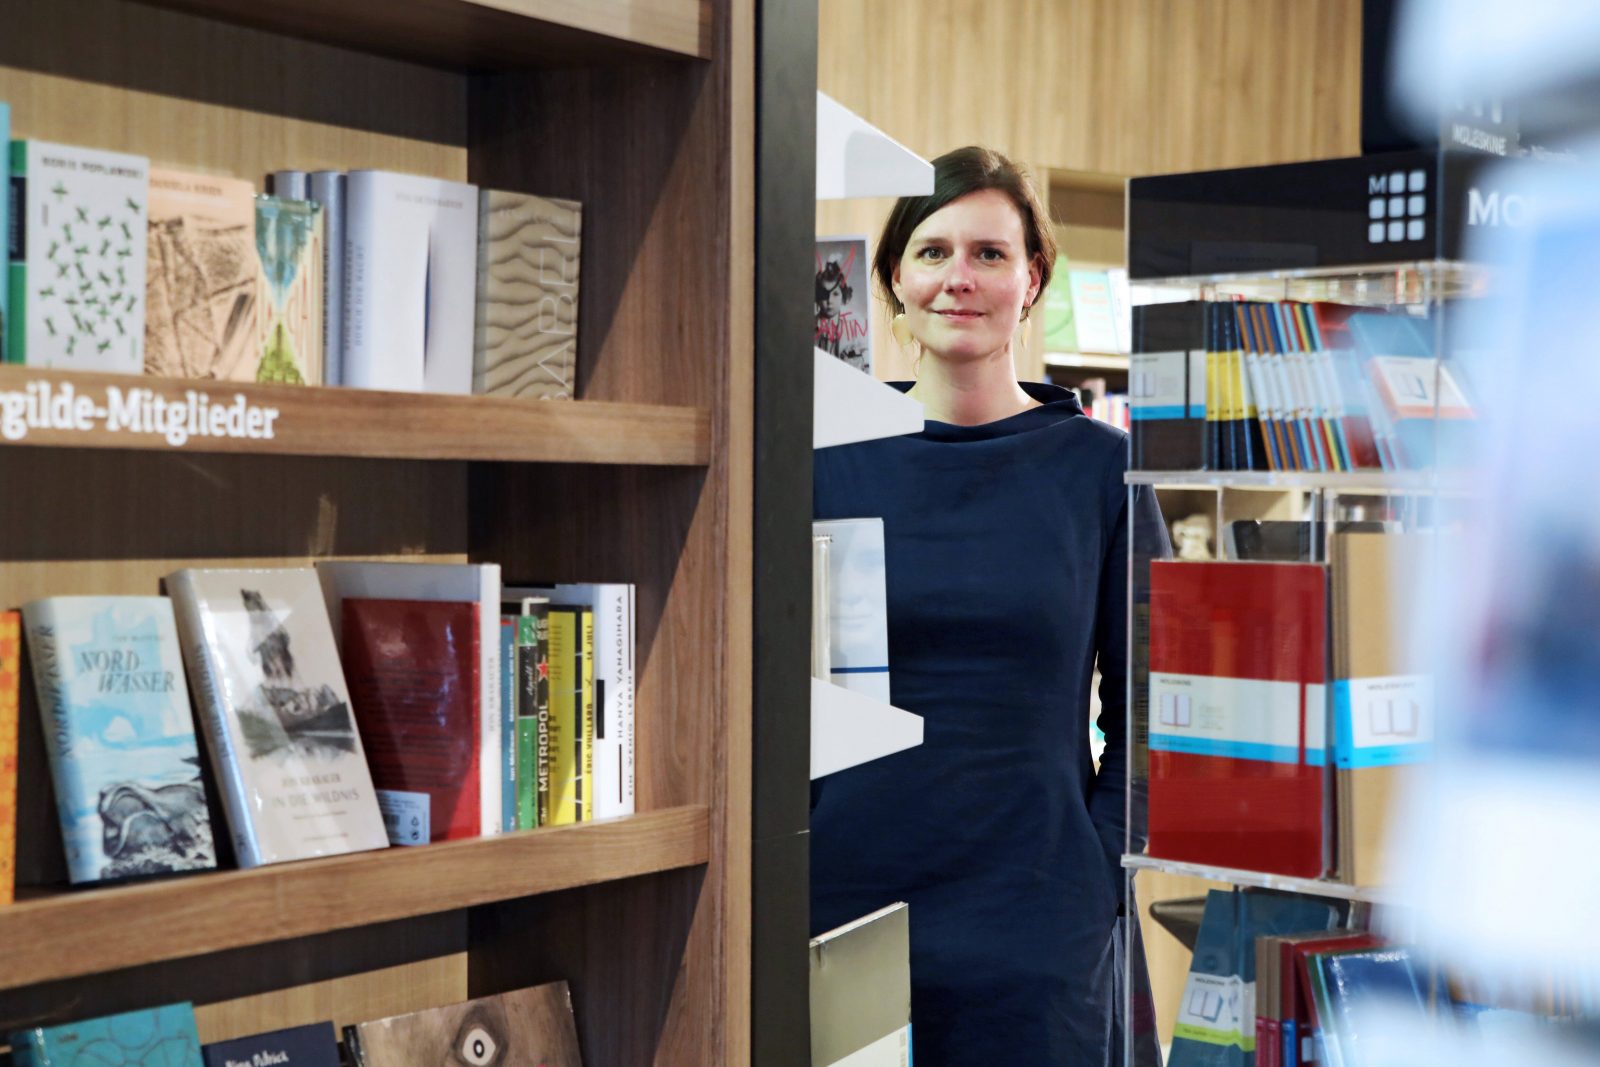 Englische Bücher kaufen in Berlin Ocelot-Chefin Maria Christina Piwowarski hat auch eine Auswahl englischer Bücher im Sortiment